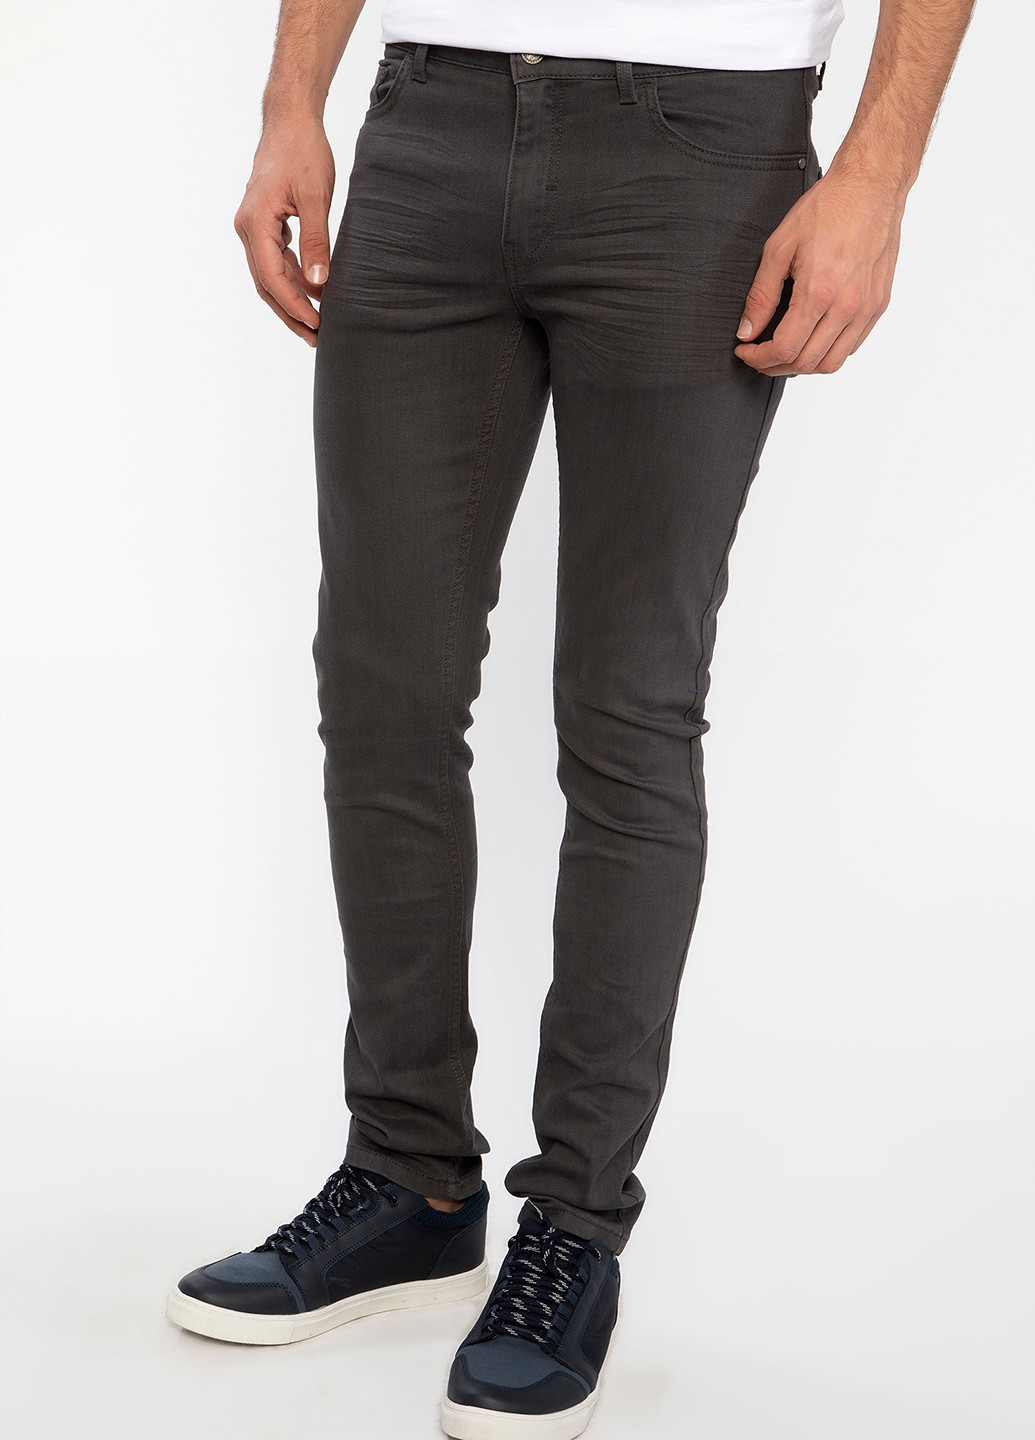 Темно-серые демисезонные джинсы DeFacto